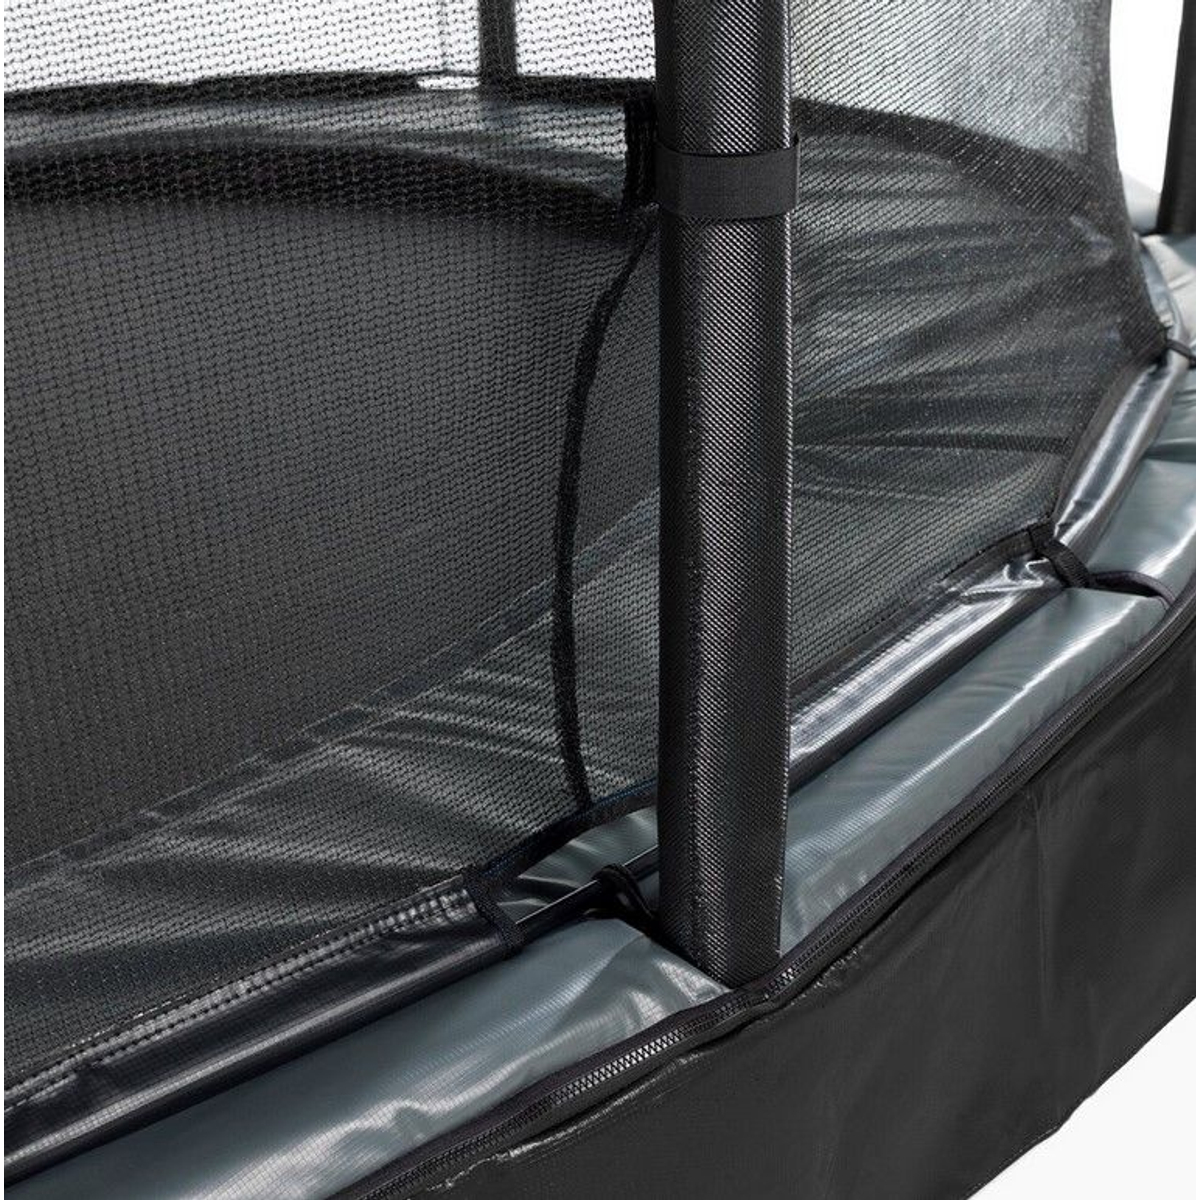 EXIT Elegant Premium inground trampoline ø305cm met Deluxe veiligheidsnet - zwart